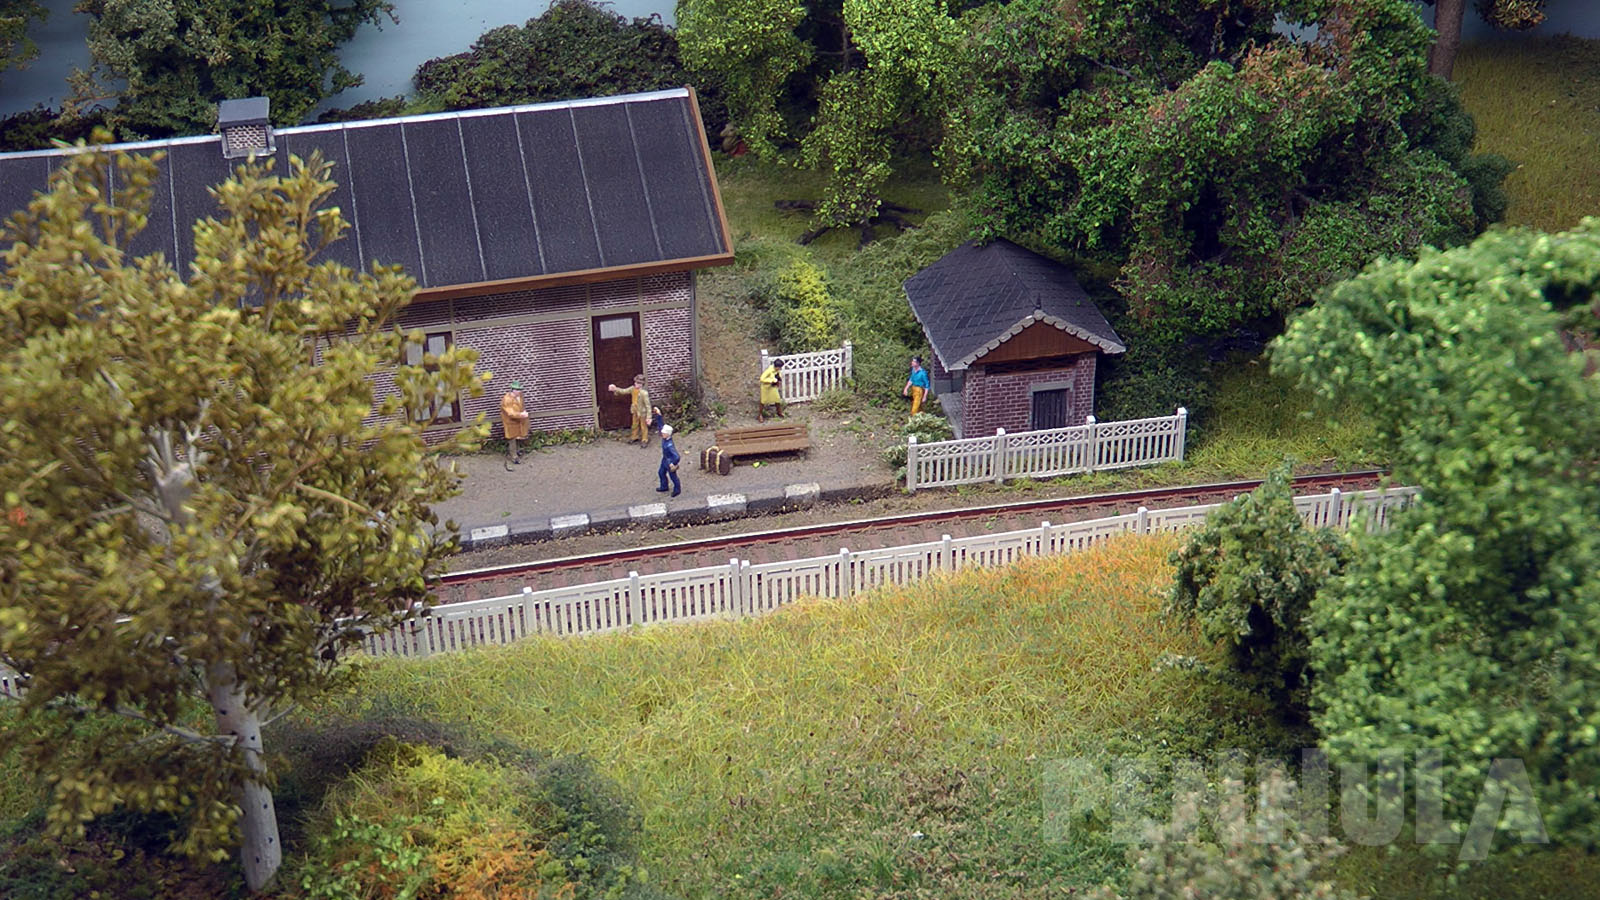 Die Modelleisenbahn wurde explizit für Modellbahn-Ausstellungen gebaut und hat eine Grundfläche von 120 cm x 60 cm.